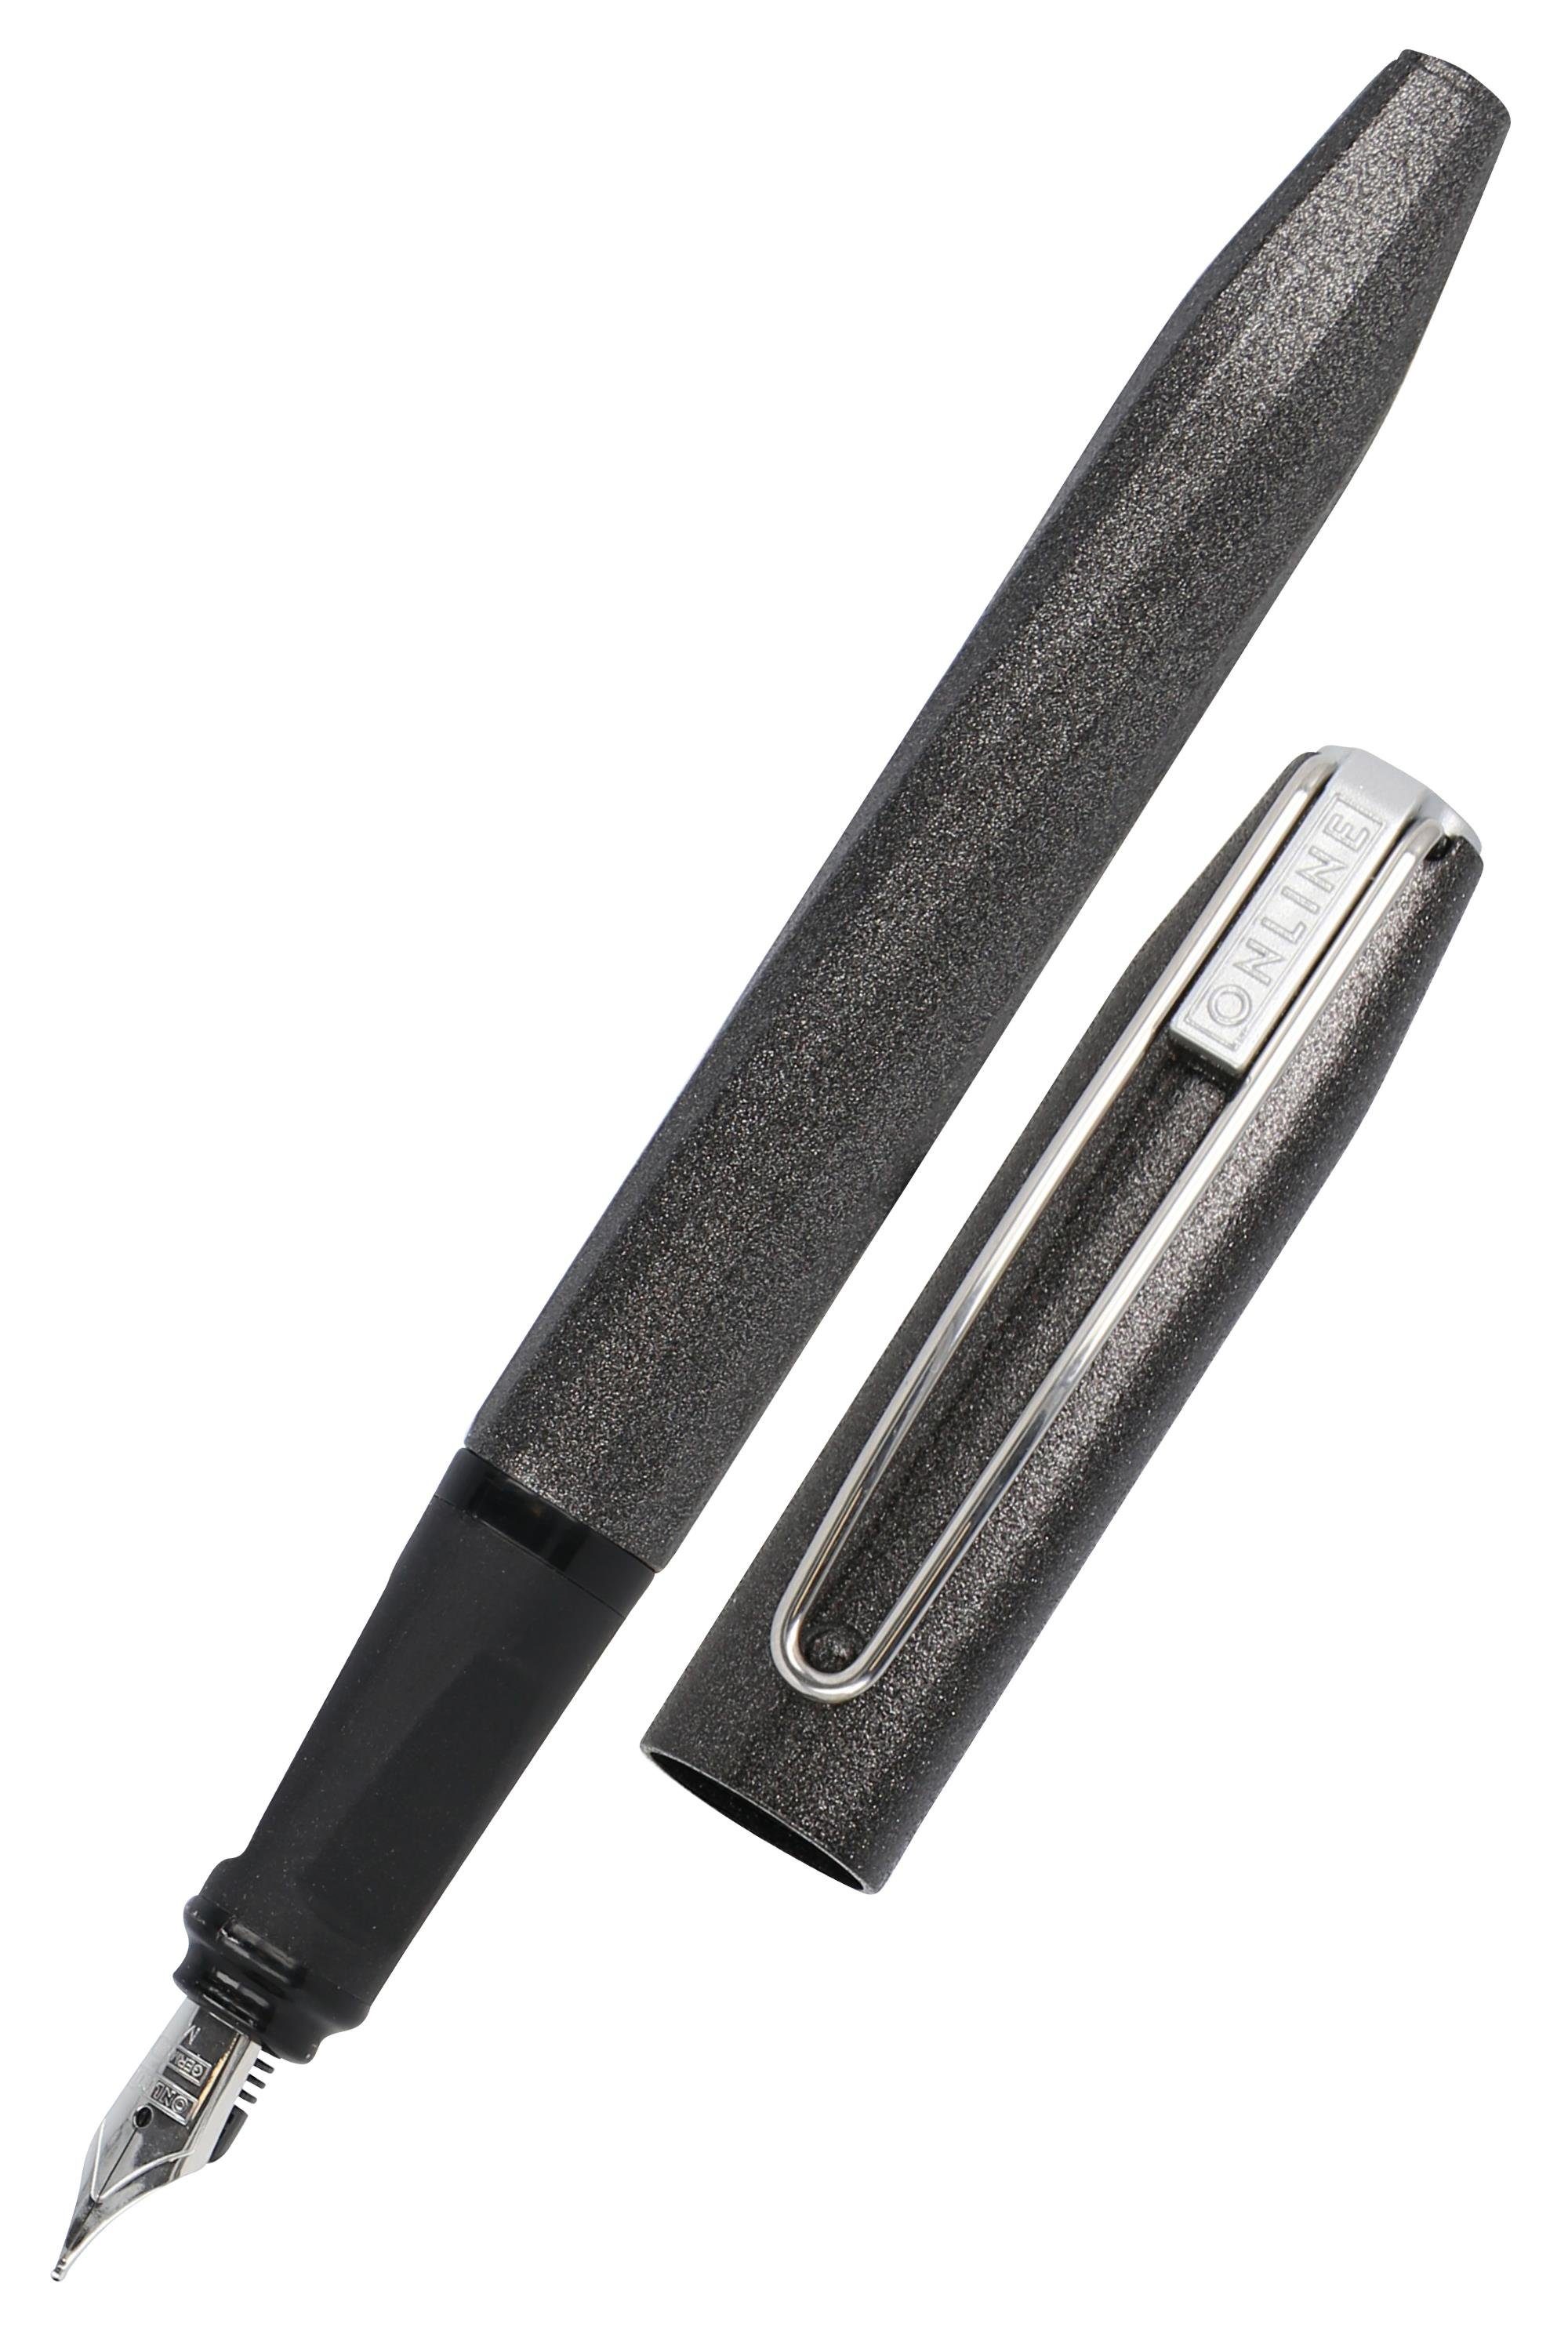 Online Pen Füller Slope, ergonomisch, ideal für die Schule, inkl. Tintenpatrone Schwarz